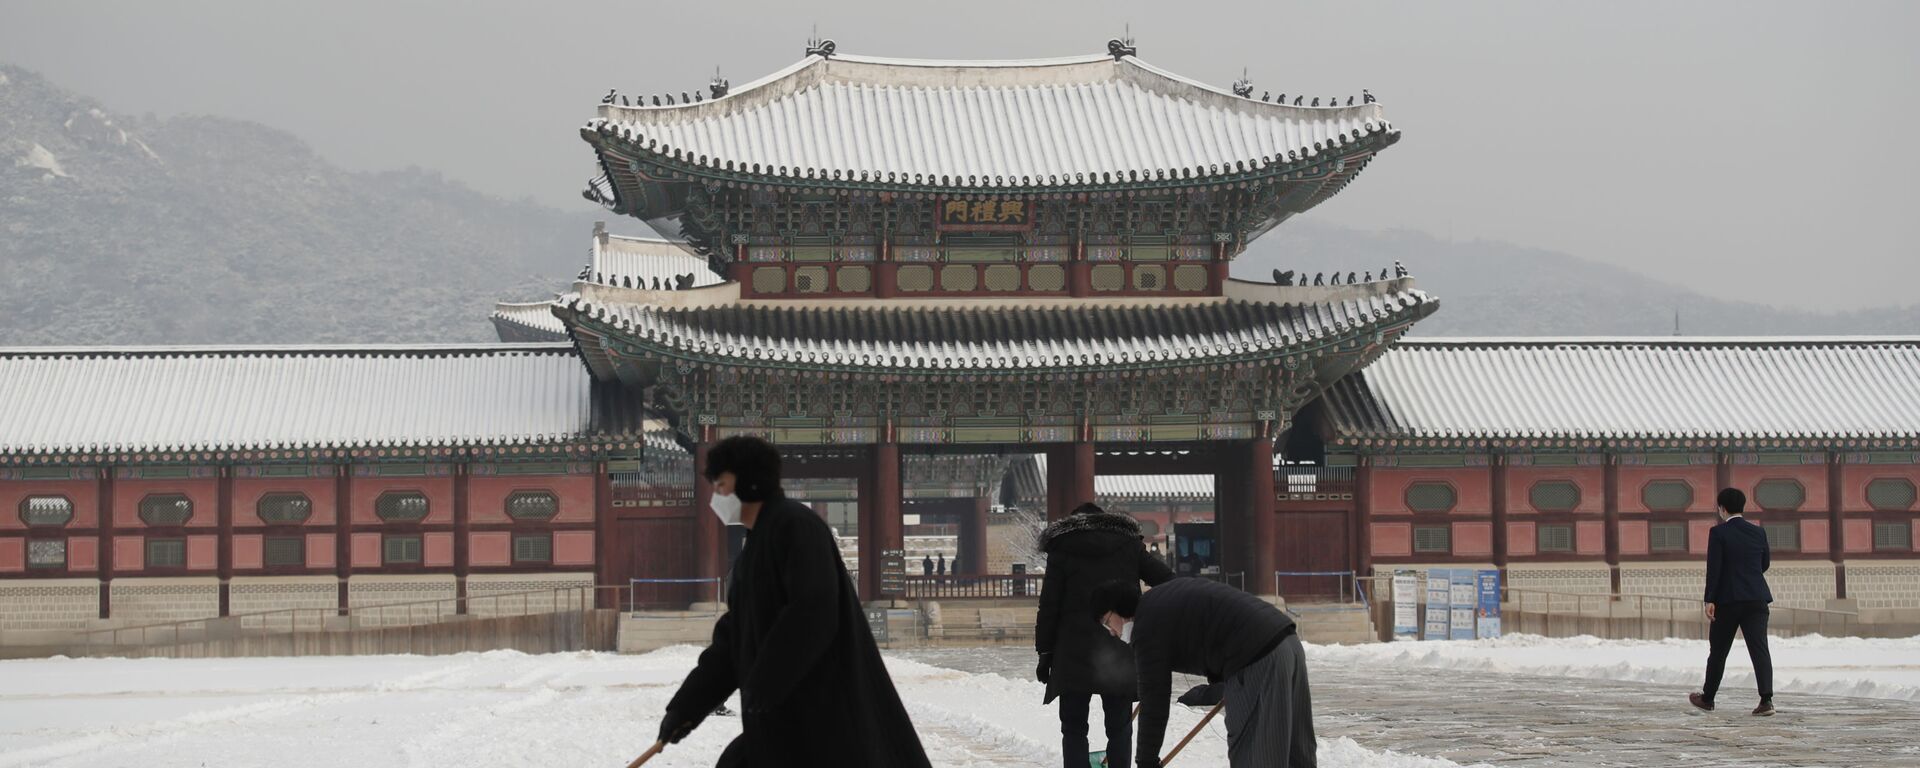 أشخاص يرتدون كمامات كإجراء احترازي ضد فيروس كورونا يقومون بإزالة الثلوج في قصر غيونغبوك، أحد المعالم المعروفة في كوريا الجنوبية، في سيئول، 13 يناير 2021. - سبوتنيك عربي, 1920, 25.09.2021